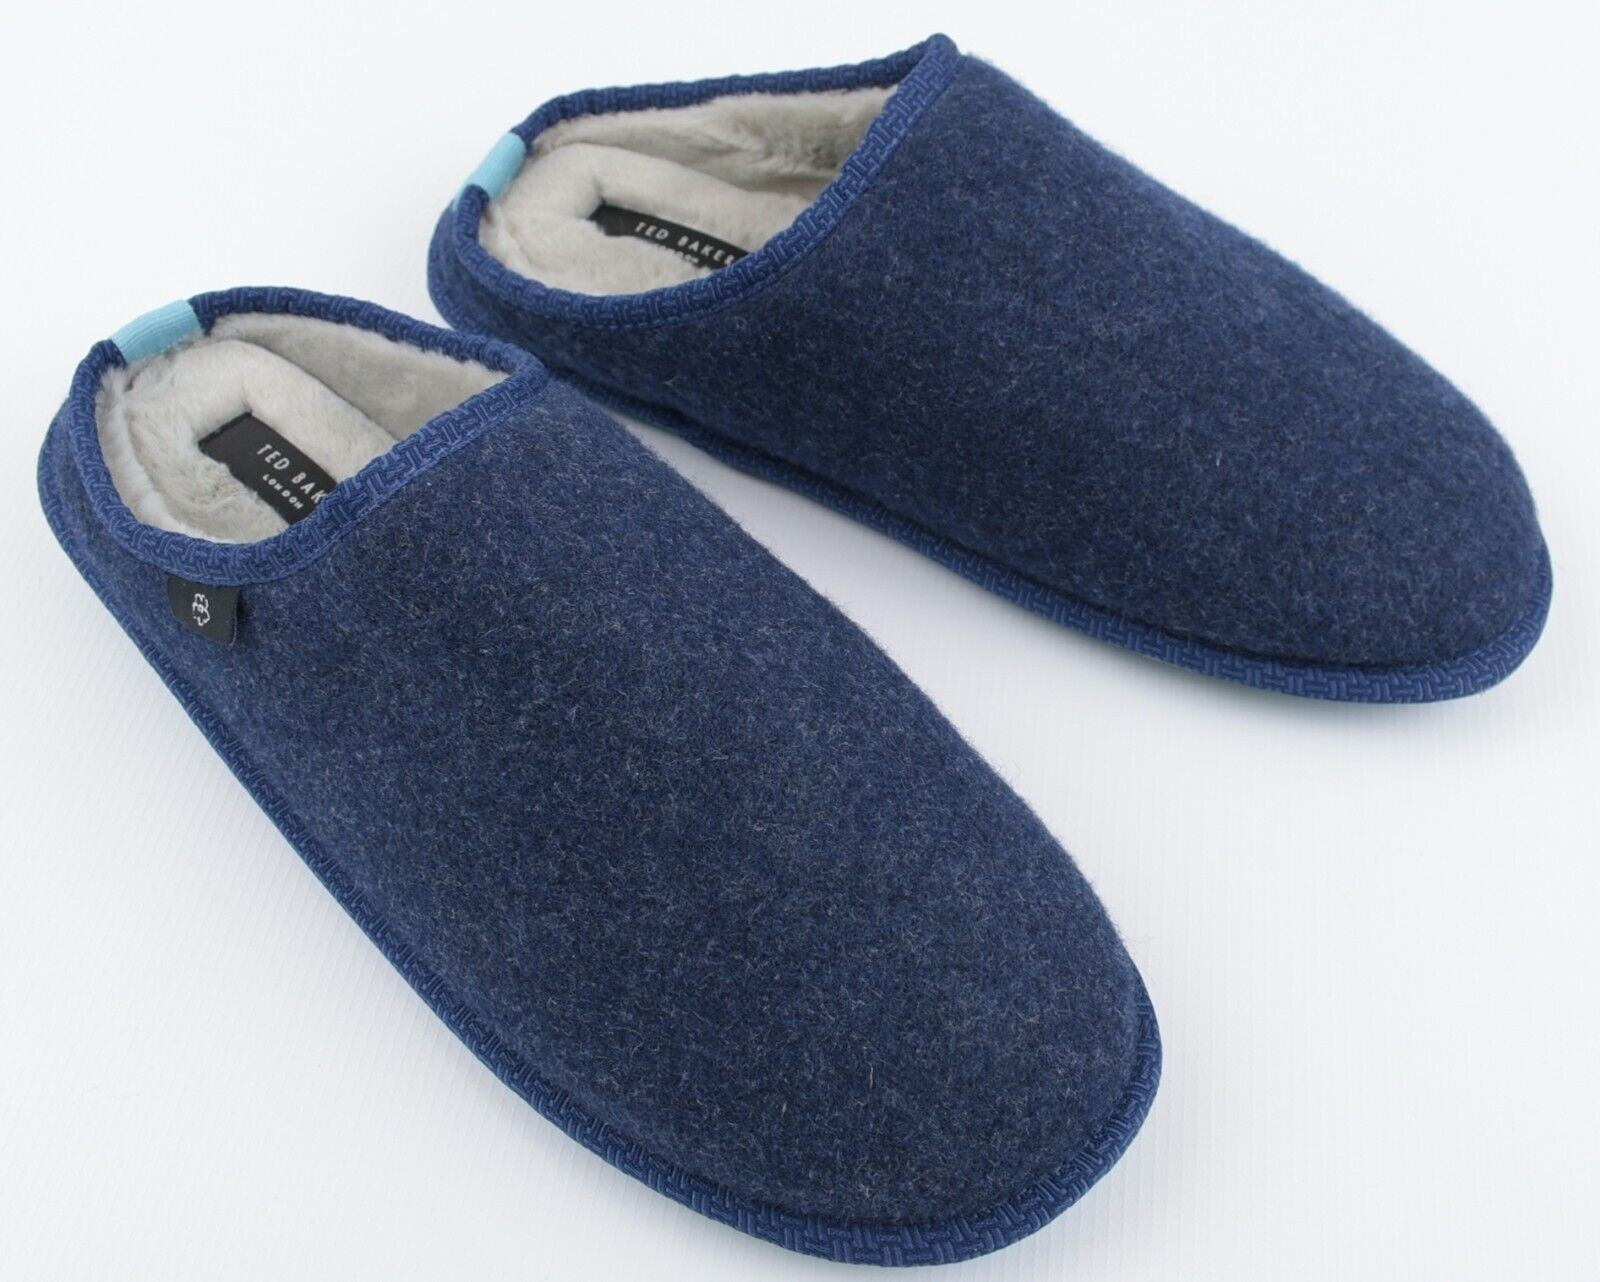 TED BAKER Men's SIMONN Felt Mulet Sole Slippers, Blue, size UK 9 /EU 43